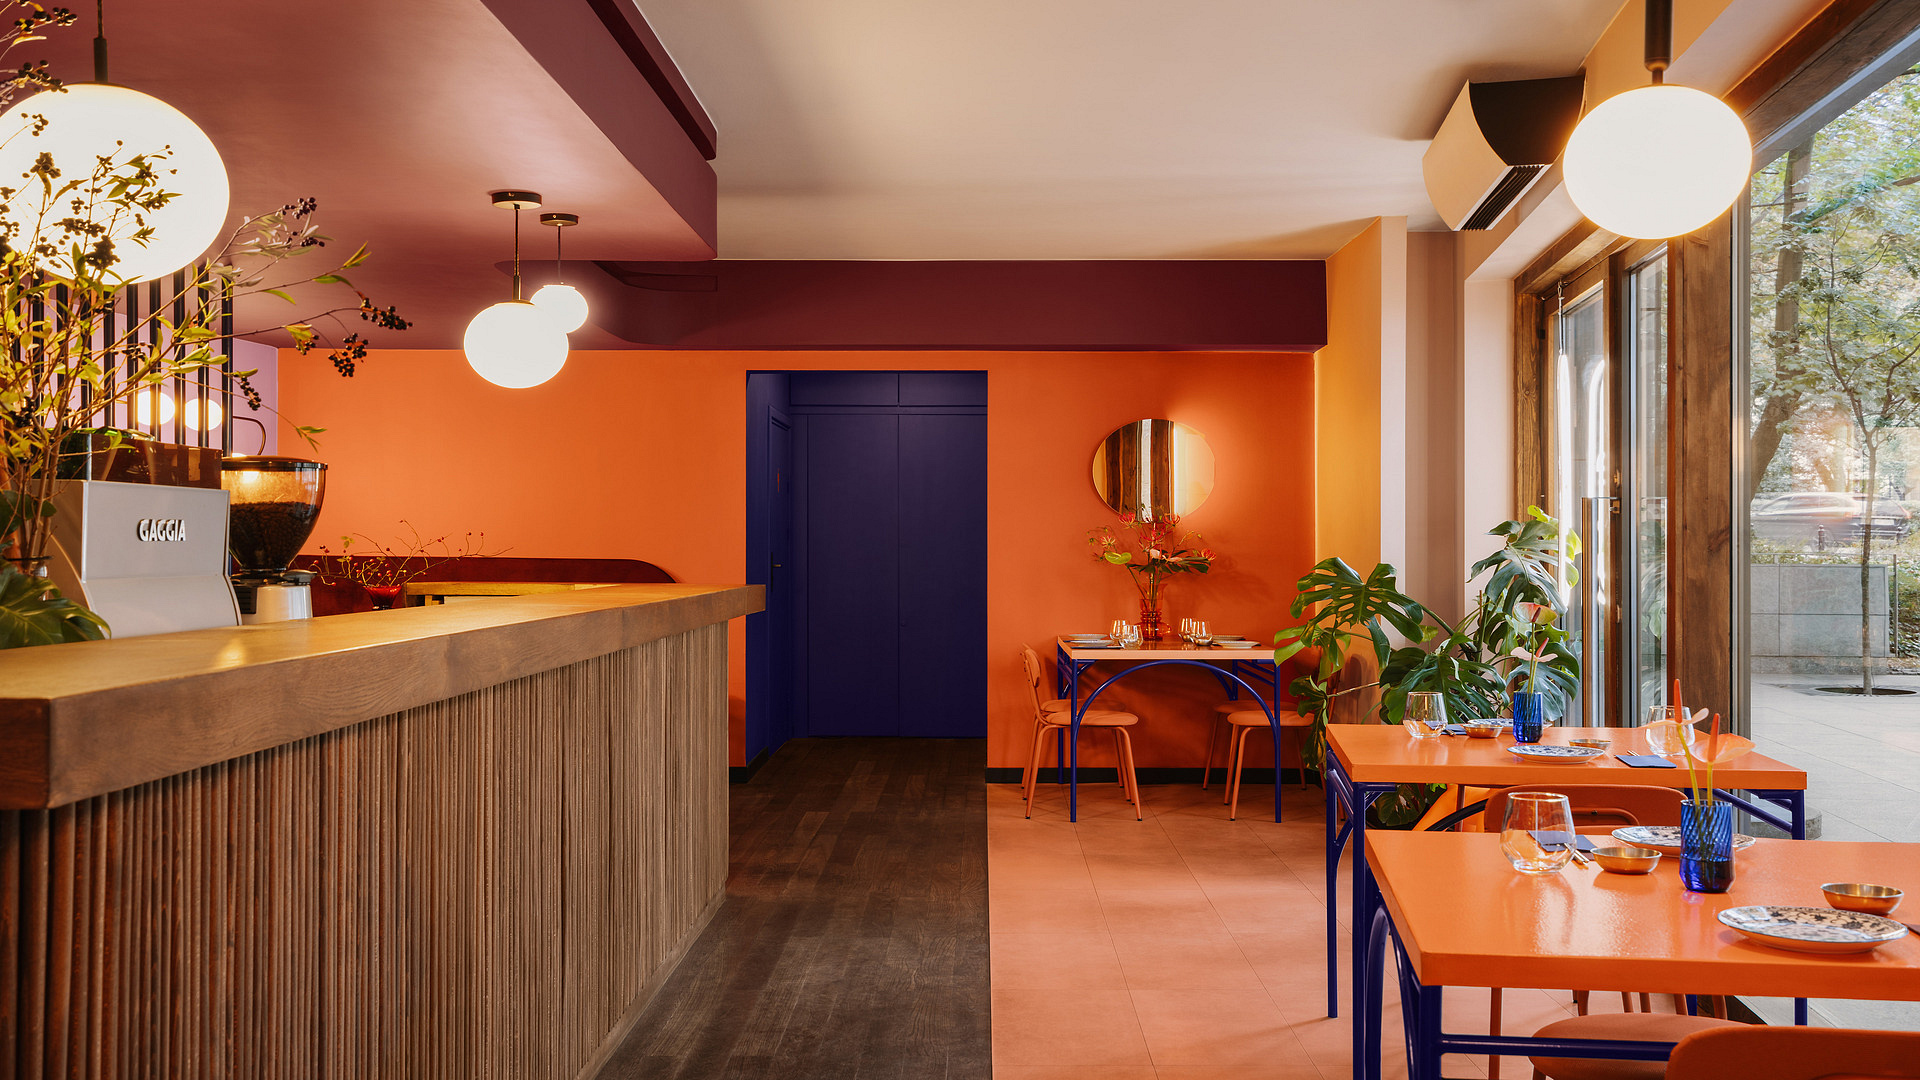 Nowy adres kulinarny do odkrycia w Warszawie. Koreańska restauracja Hesu przyciąga kolorami i pysznościami 